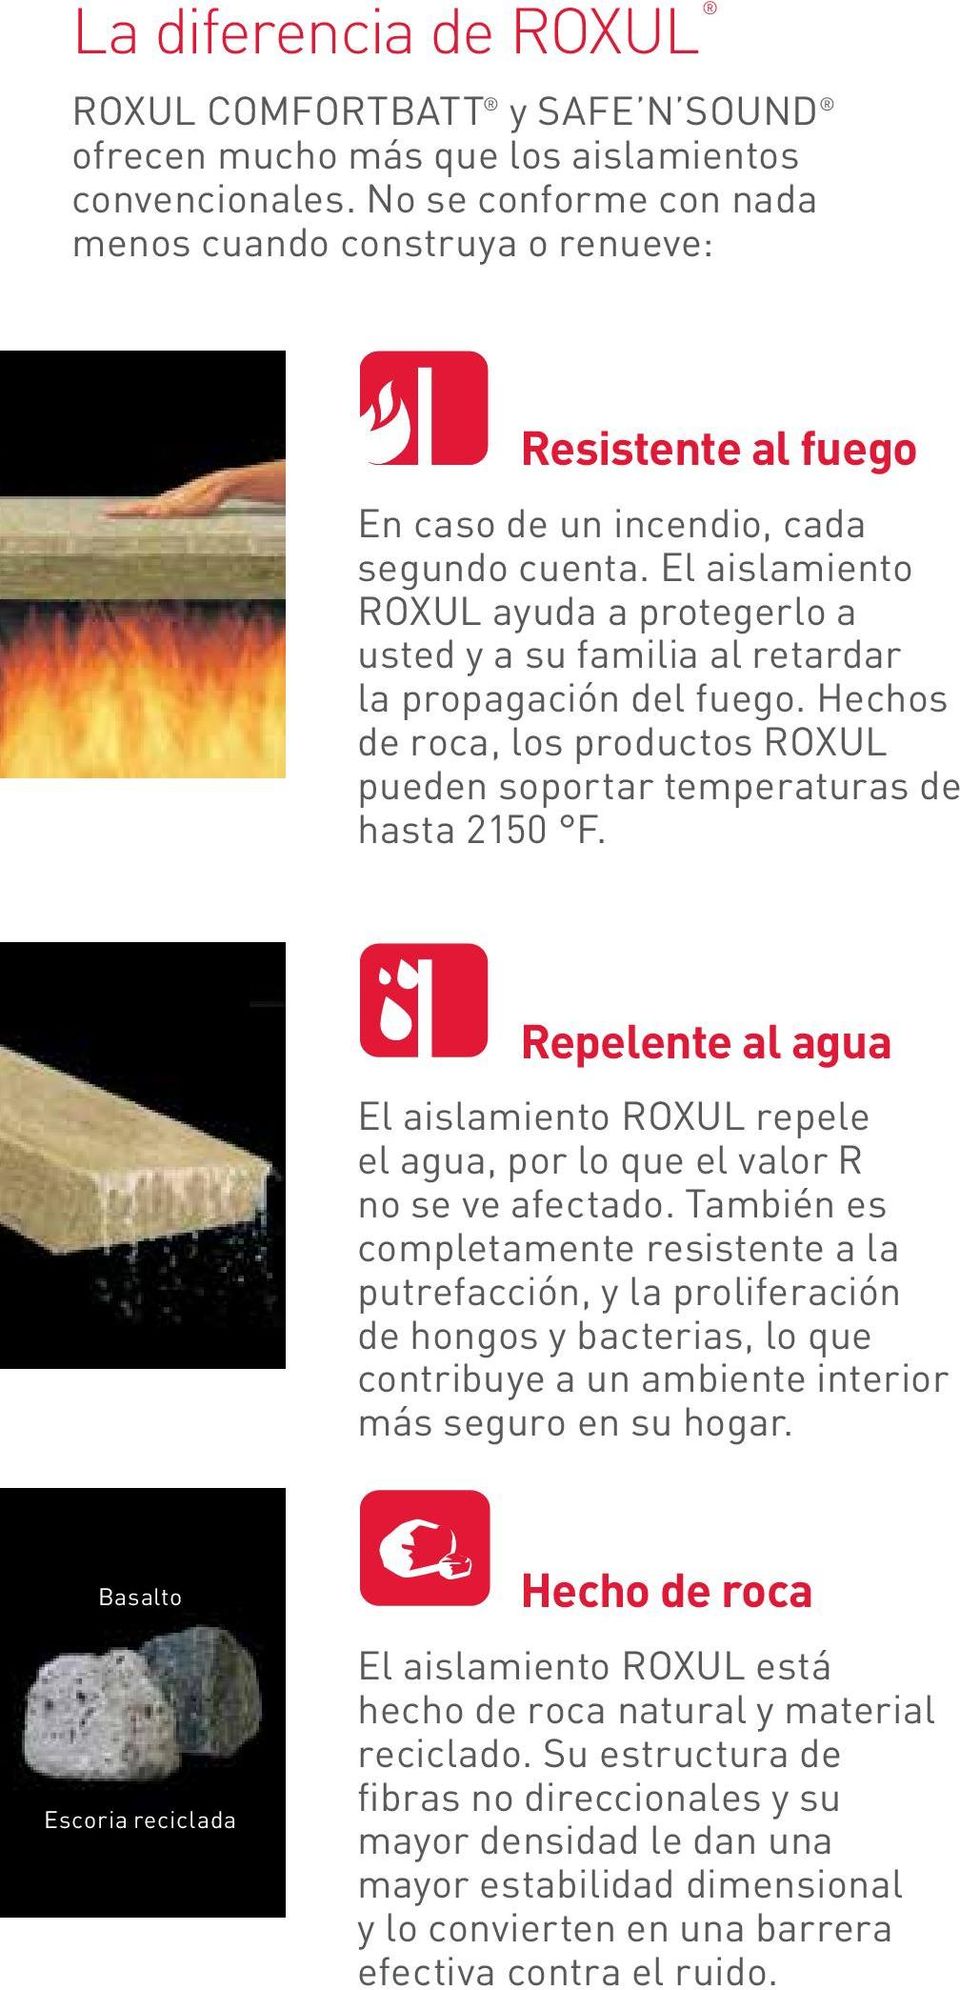 El aislamiento Roxul ayuda a protegerlo a usted y a su familia al retardar la propagación del fuego. Hechos de roca, los productos Roxul pueden soportar temperaturas de hasta 2150 F.